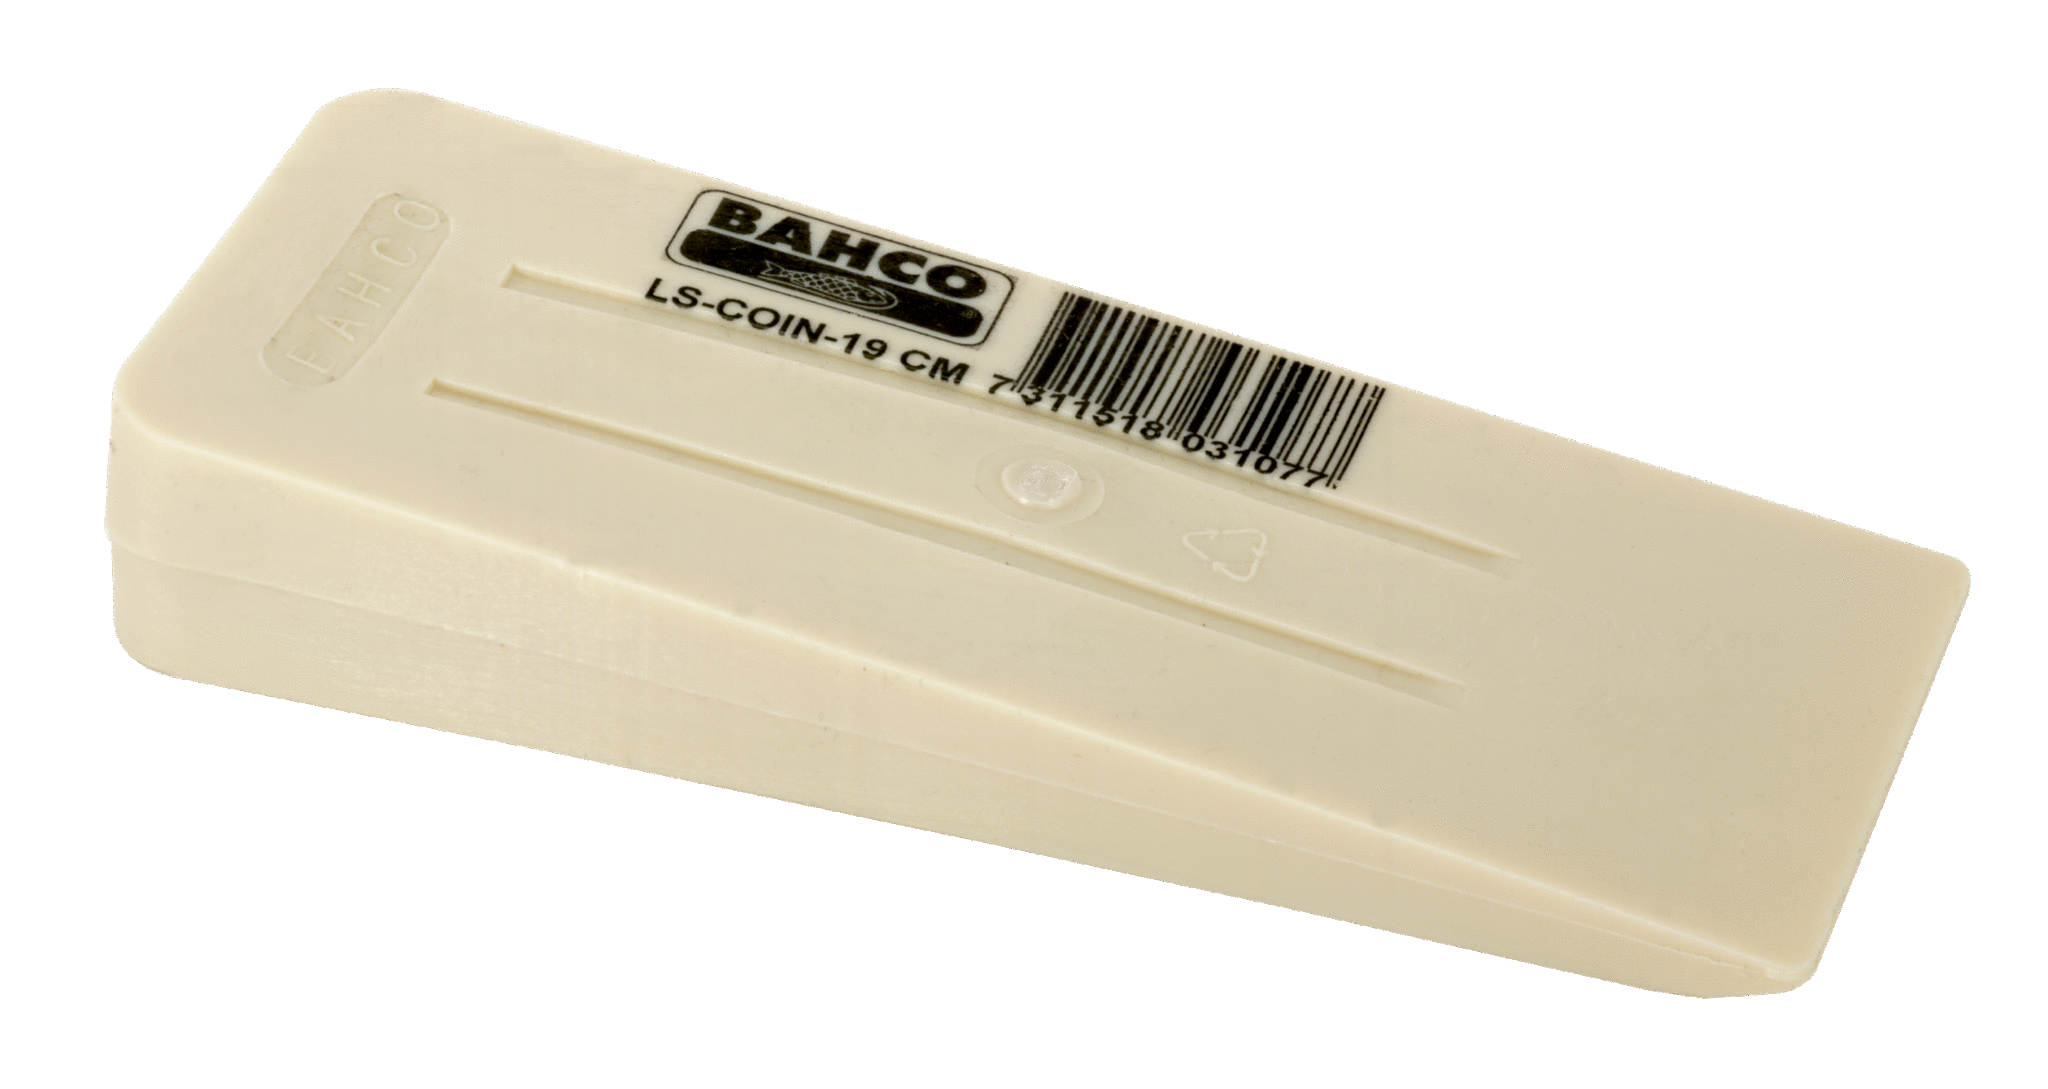 Клин для валочного топора синтетический BAHCO LS-COIN 19 CM